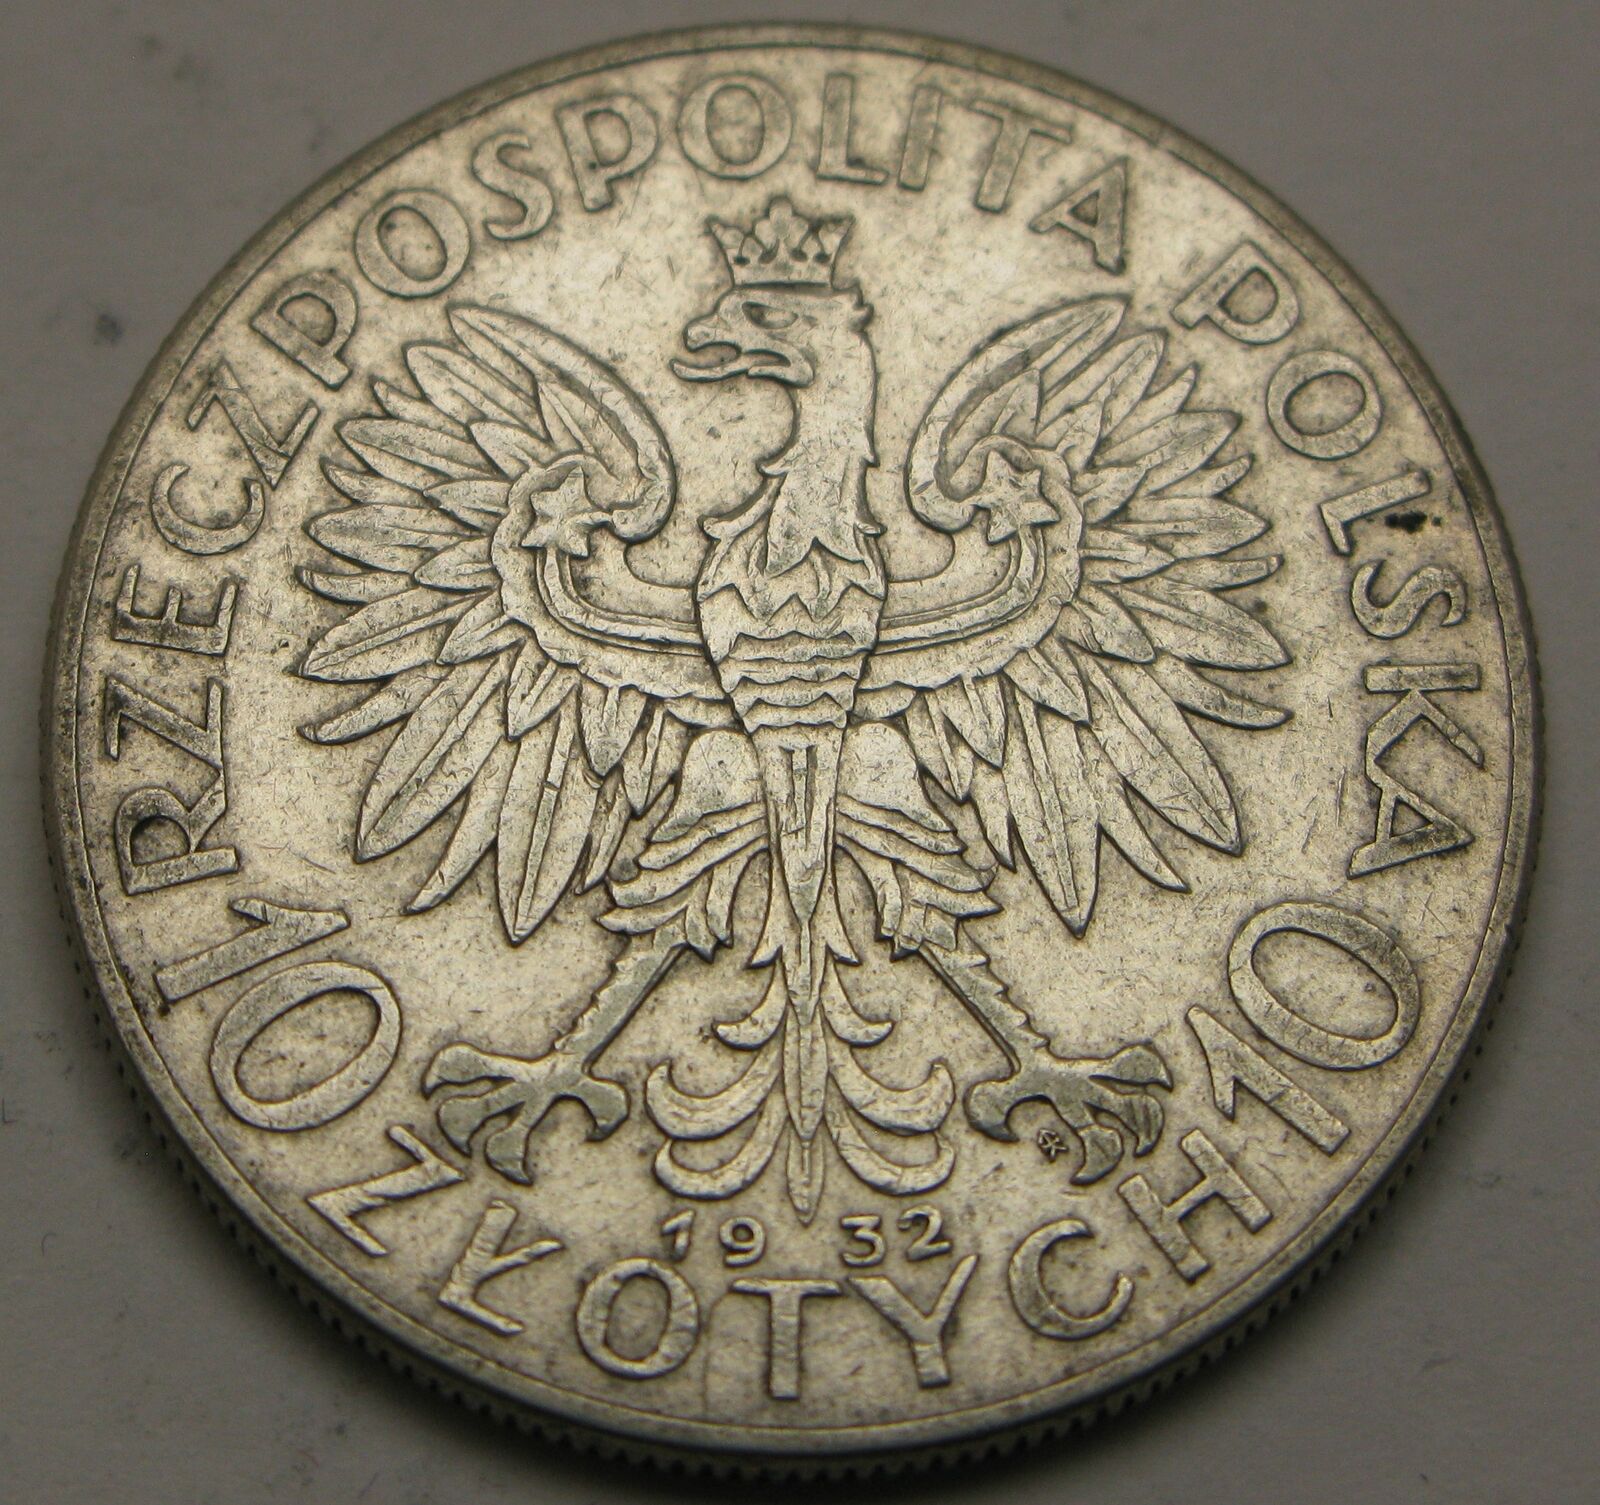 Poland 10 Zlotych 1932 (w) - Silver 0.750 - Queen Jadwiga - Vf - 3751